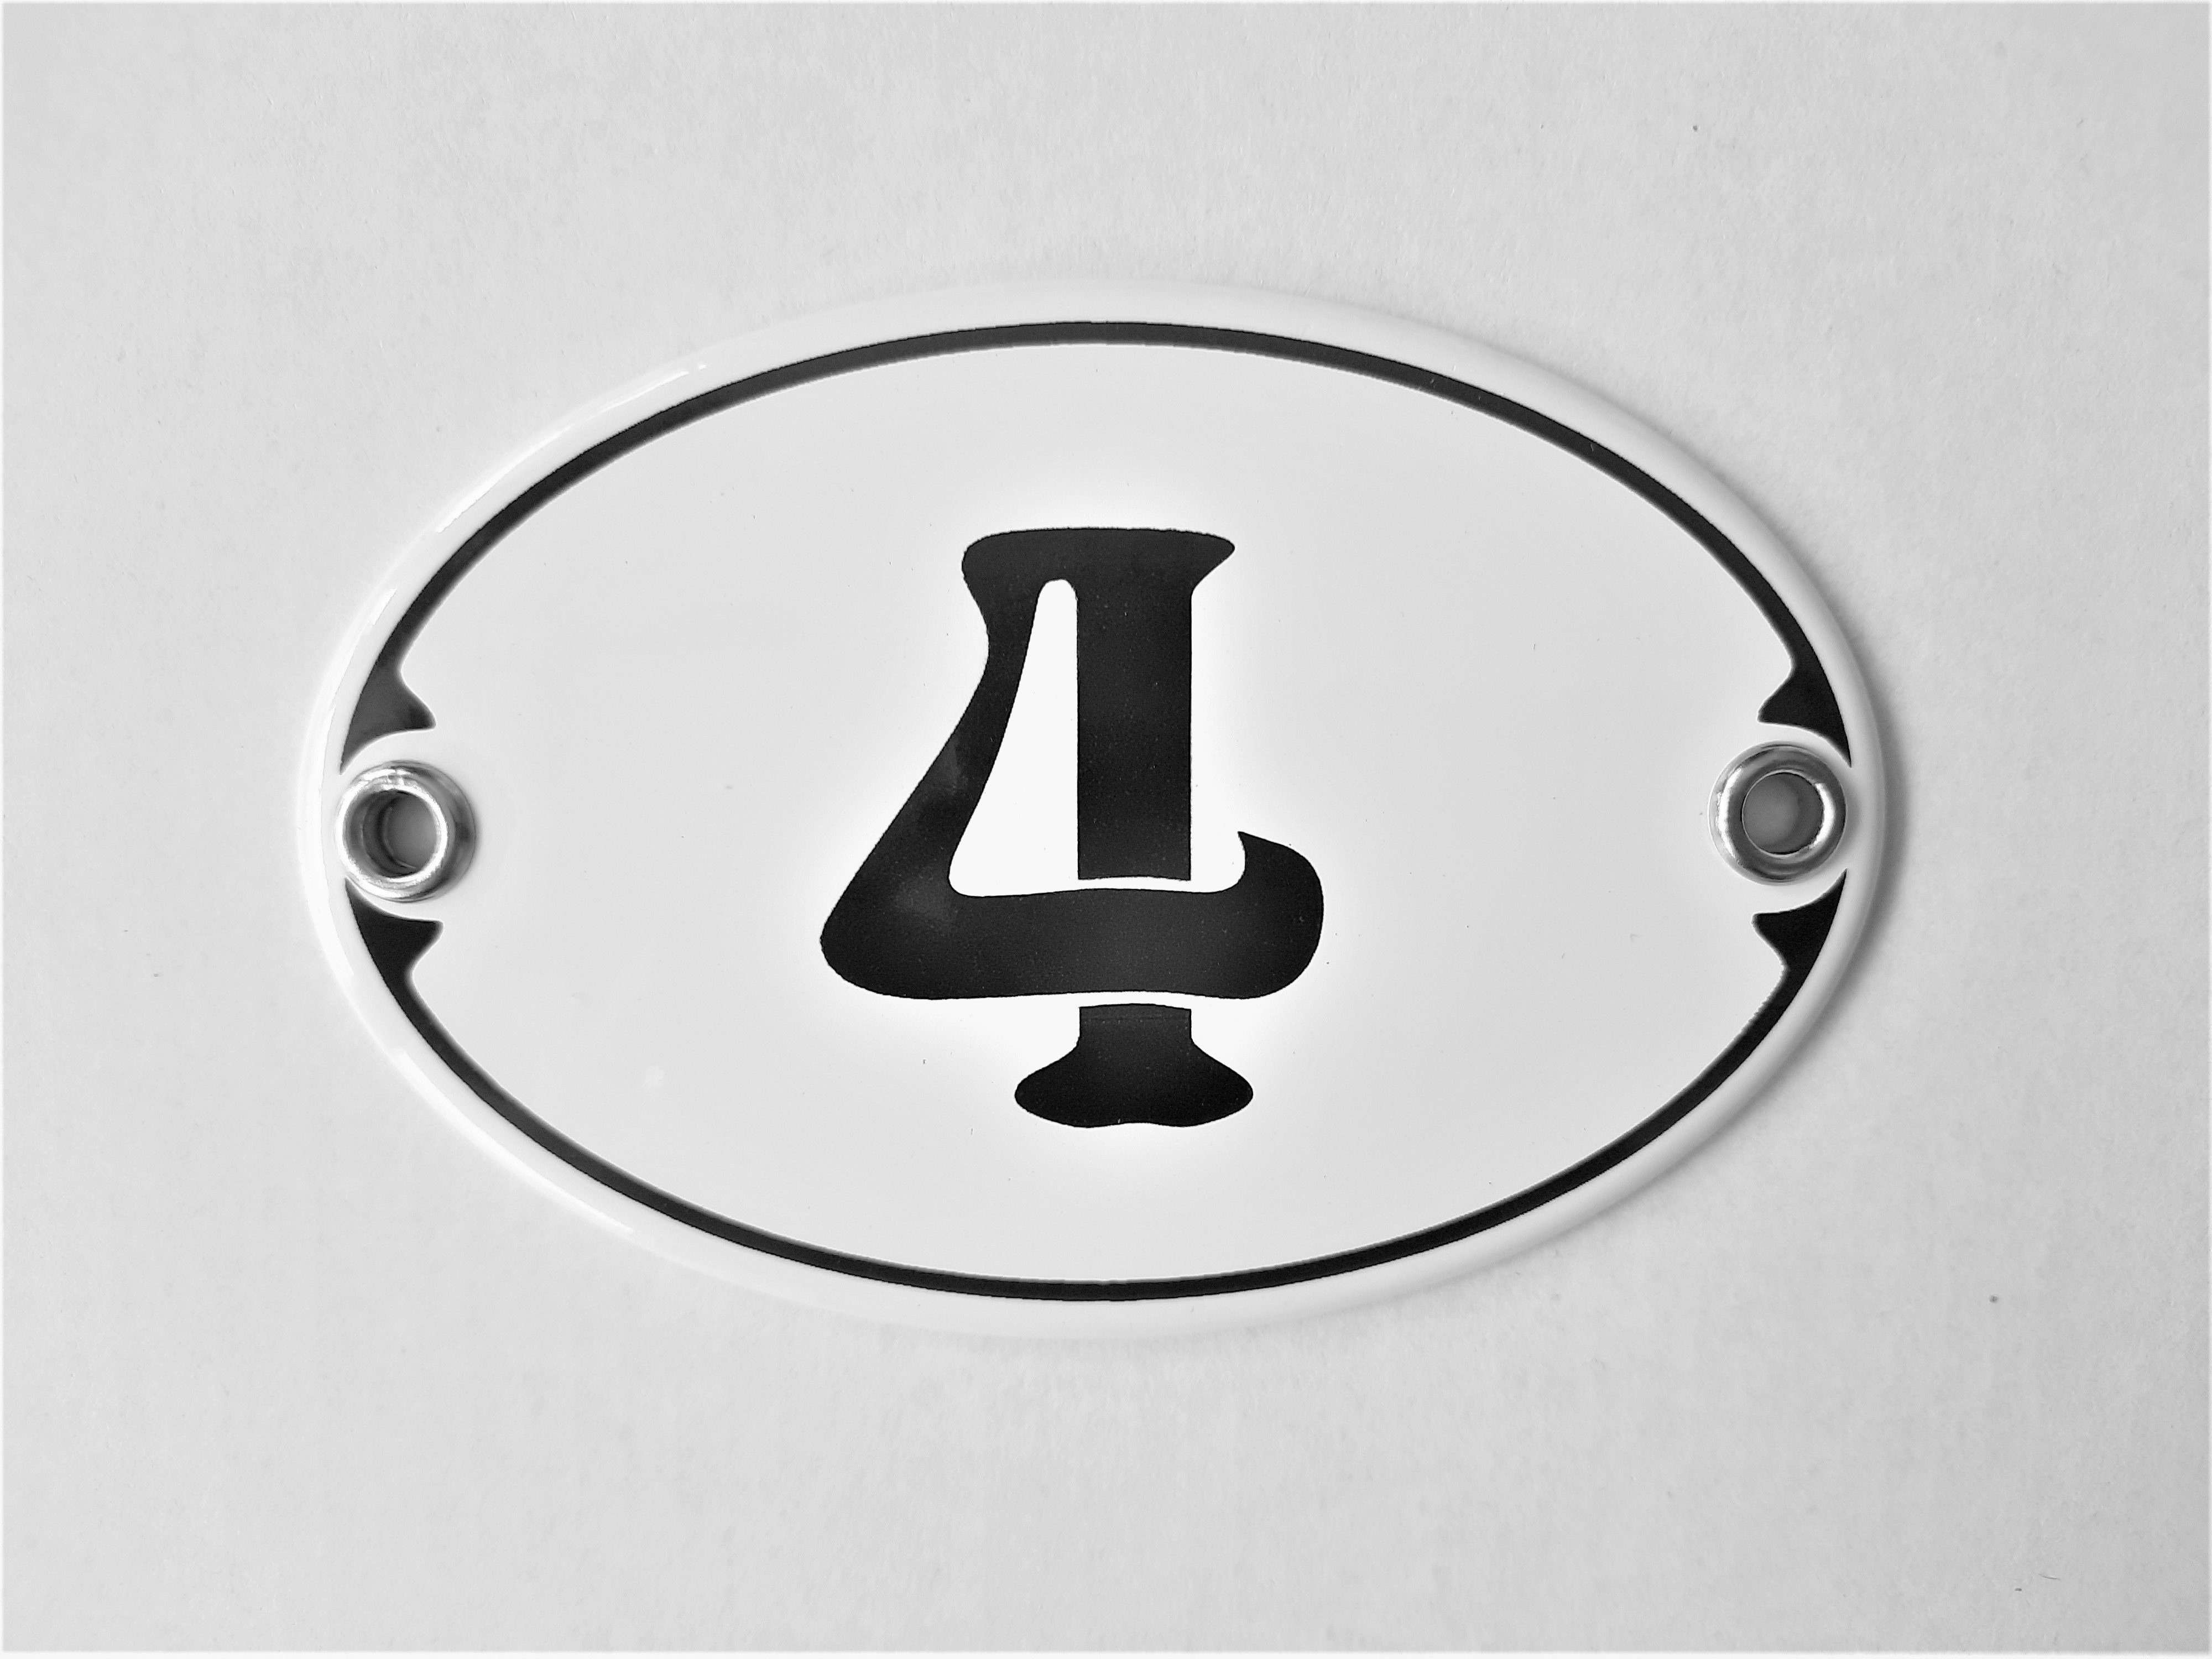 Elina Email Schilder Hausnummer Zahlenschild "4", (Emaille/Email)